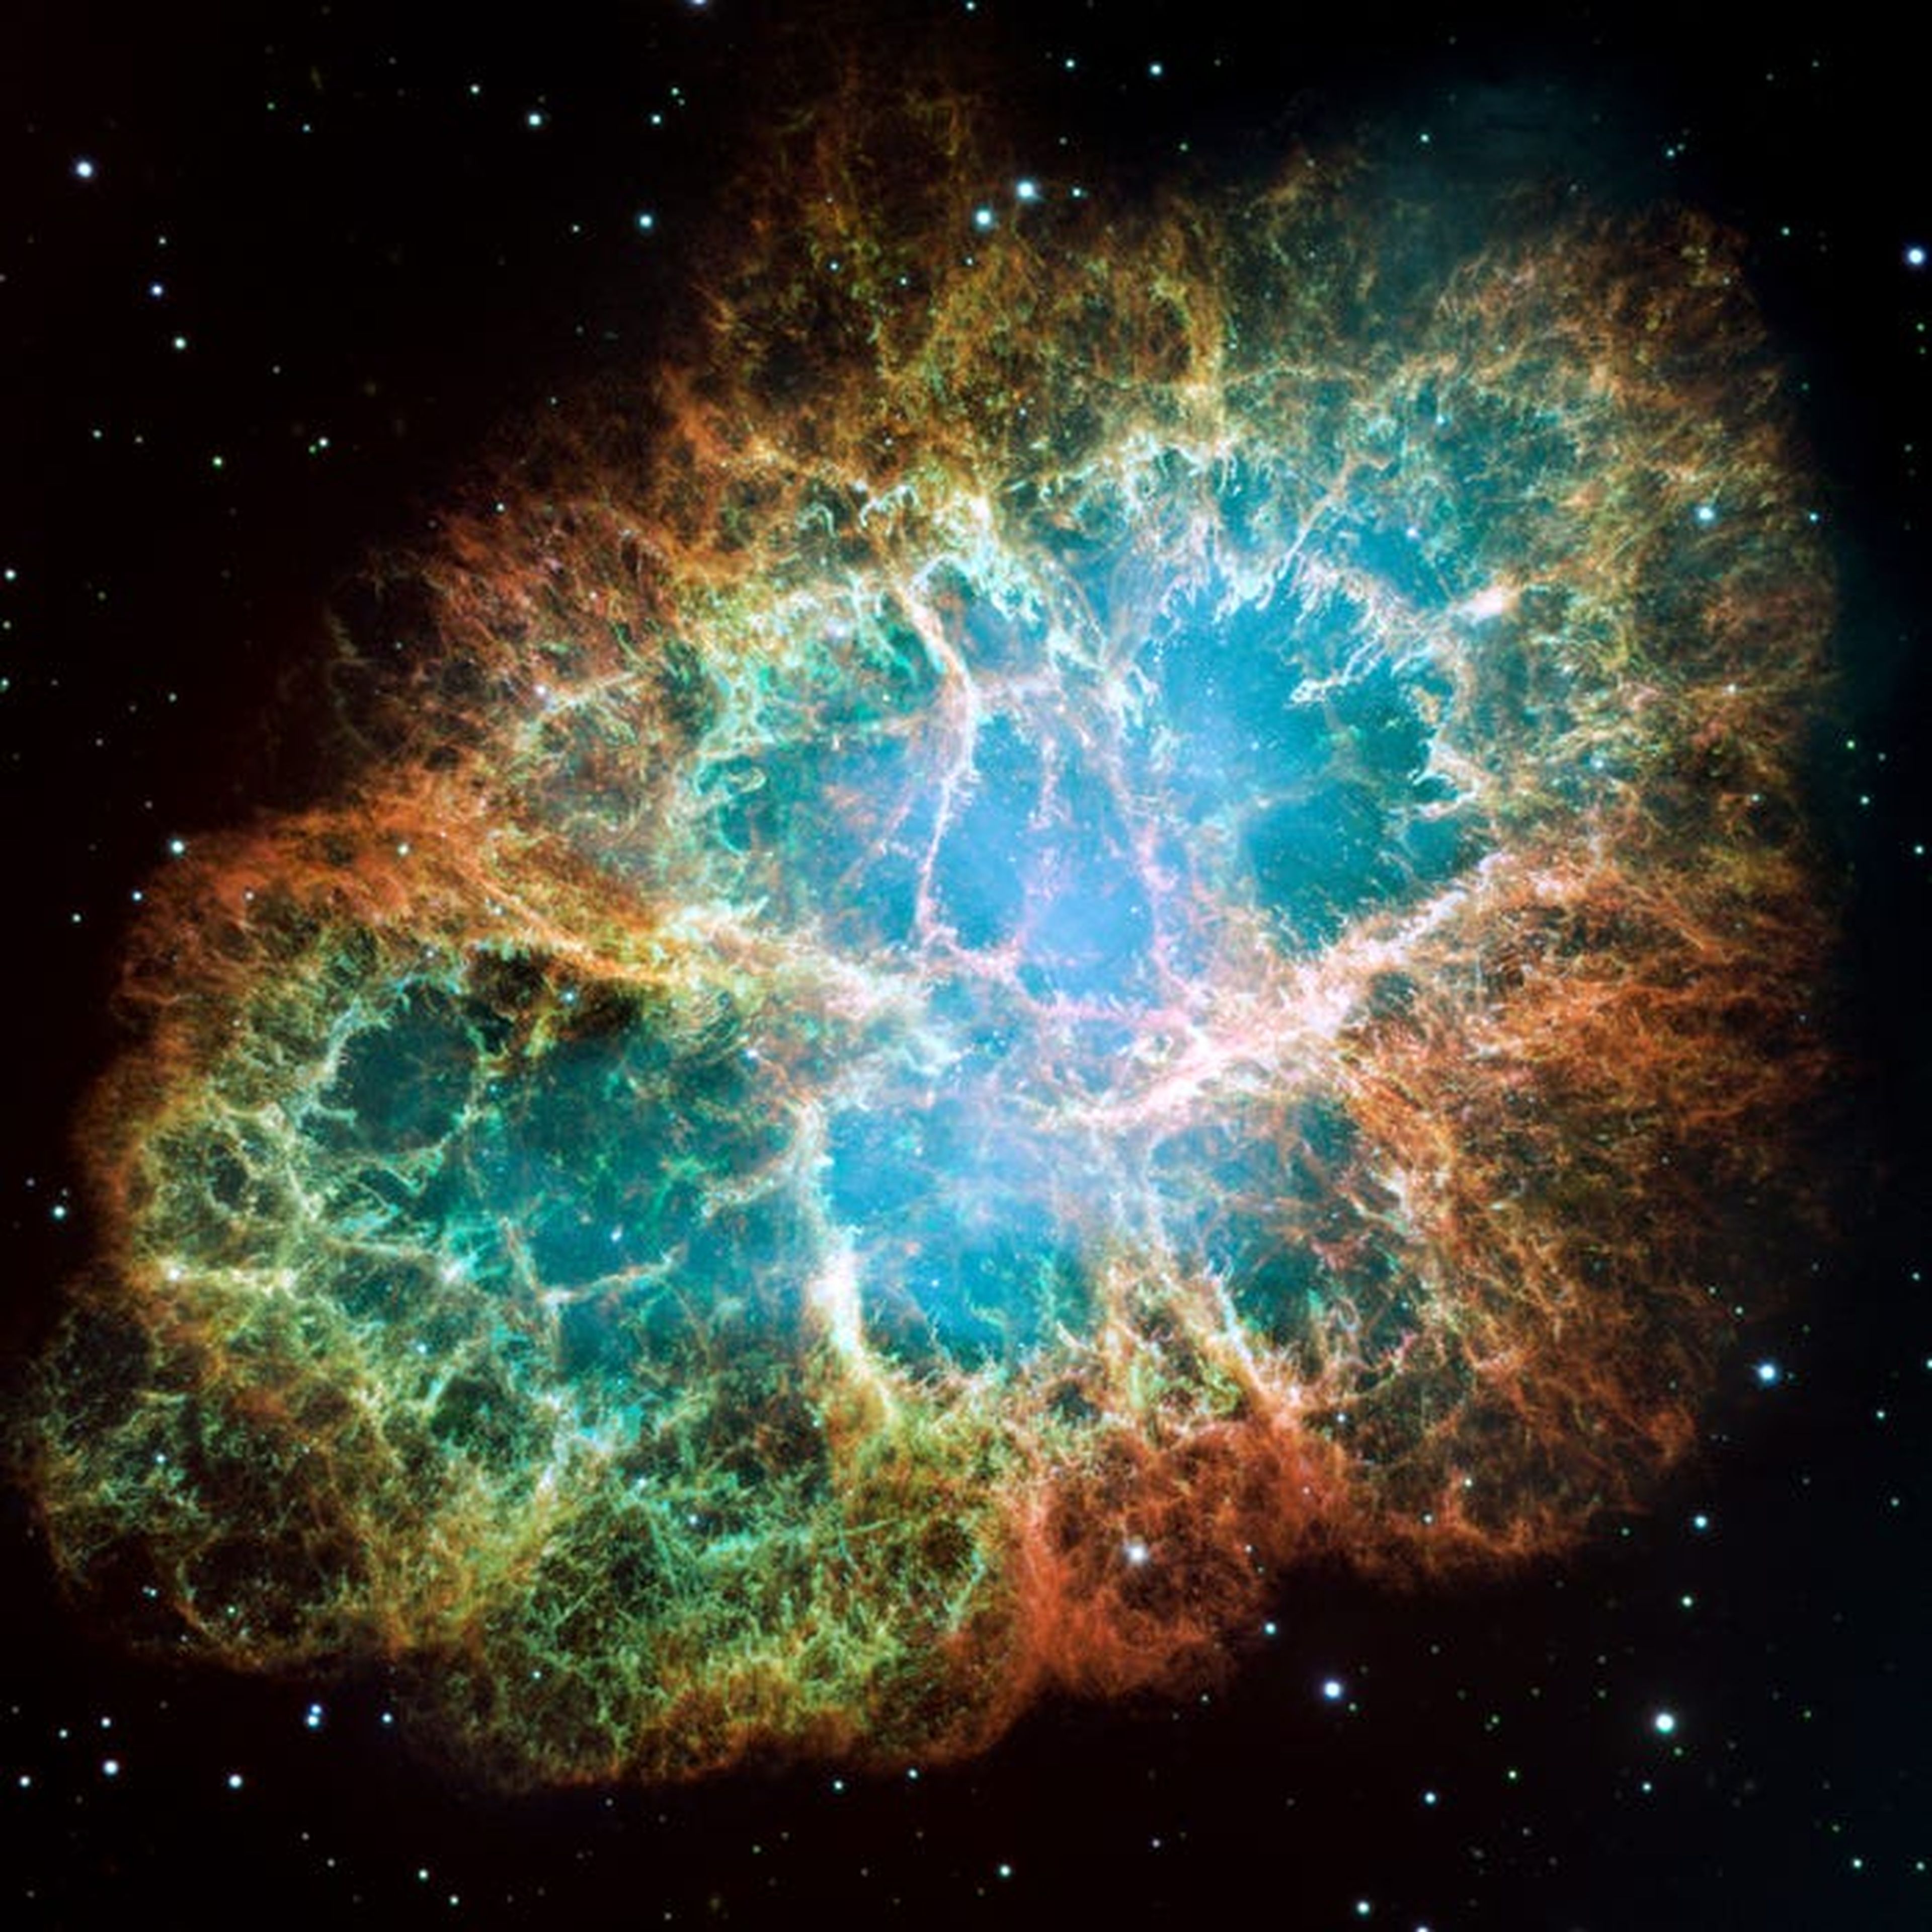 La nebulosa del Cangrejo, un remanente de la explosión de una supernova que se expande a lo largo de seis años luz, según las imágenes del Hubble.